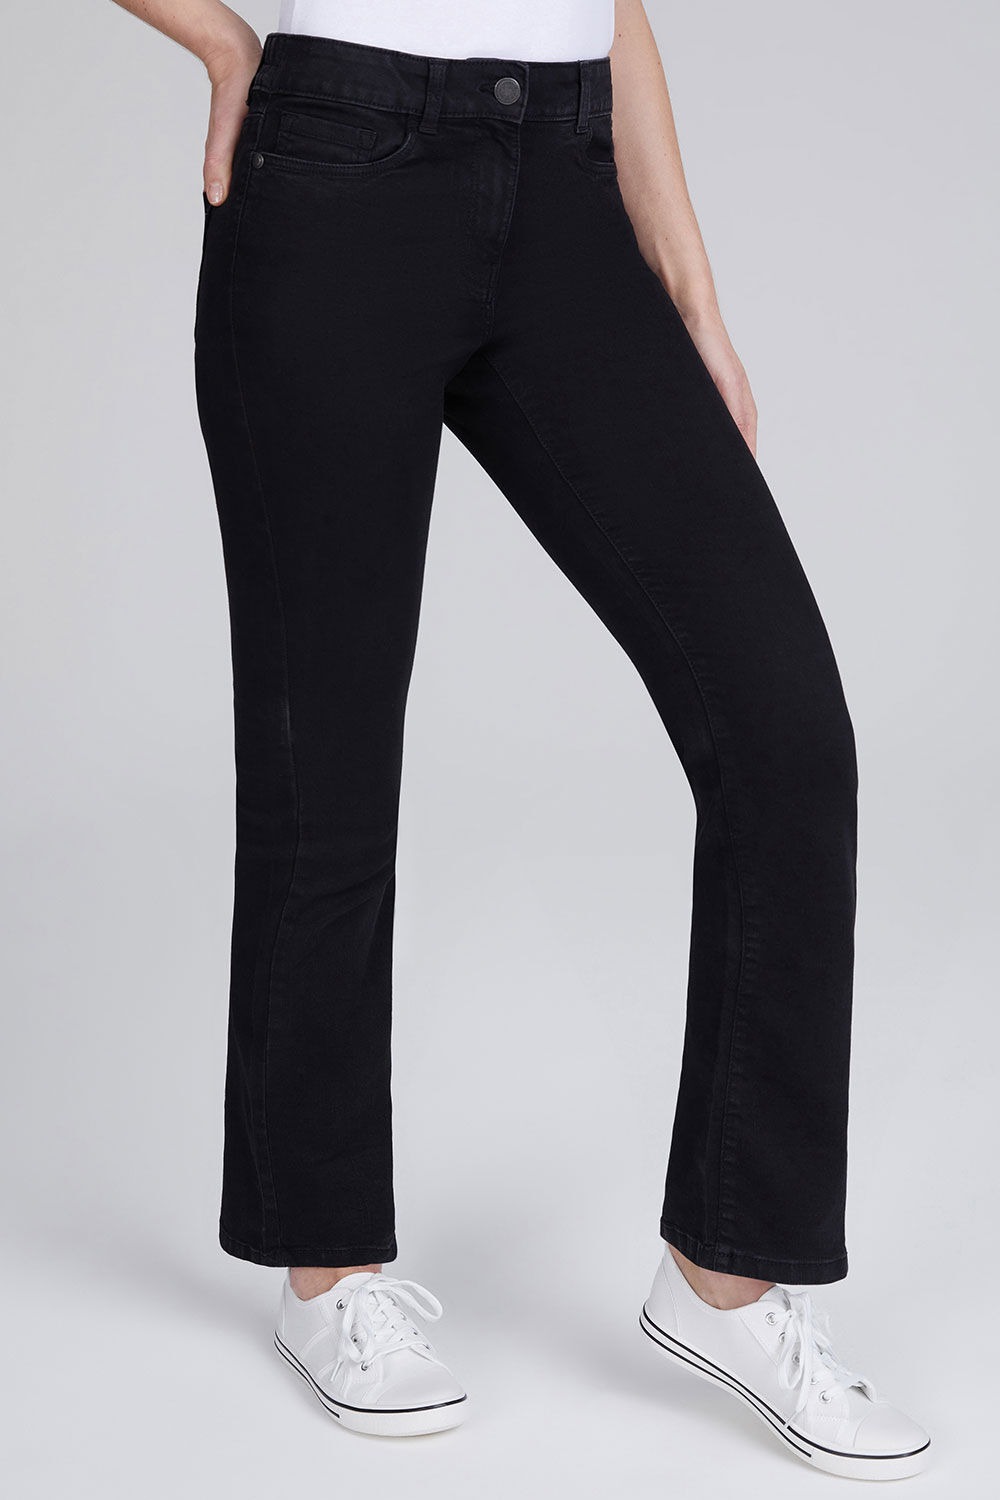 Bonmarche Betty Bootcut Jeans - Black, Size: 10